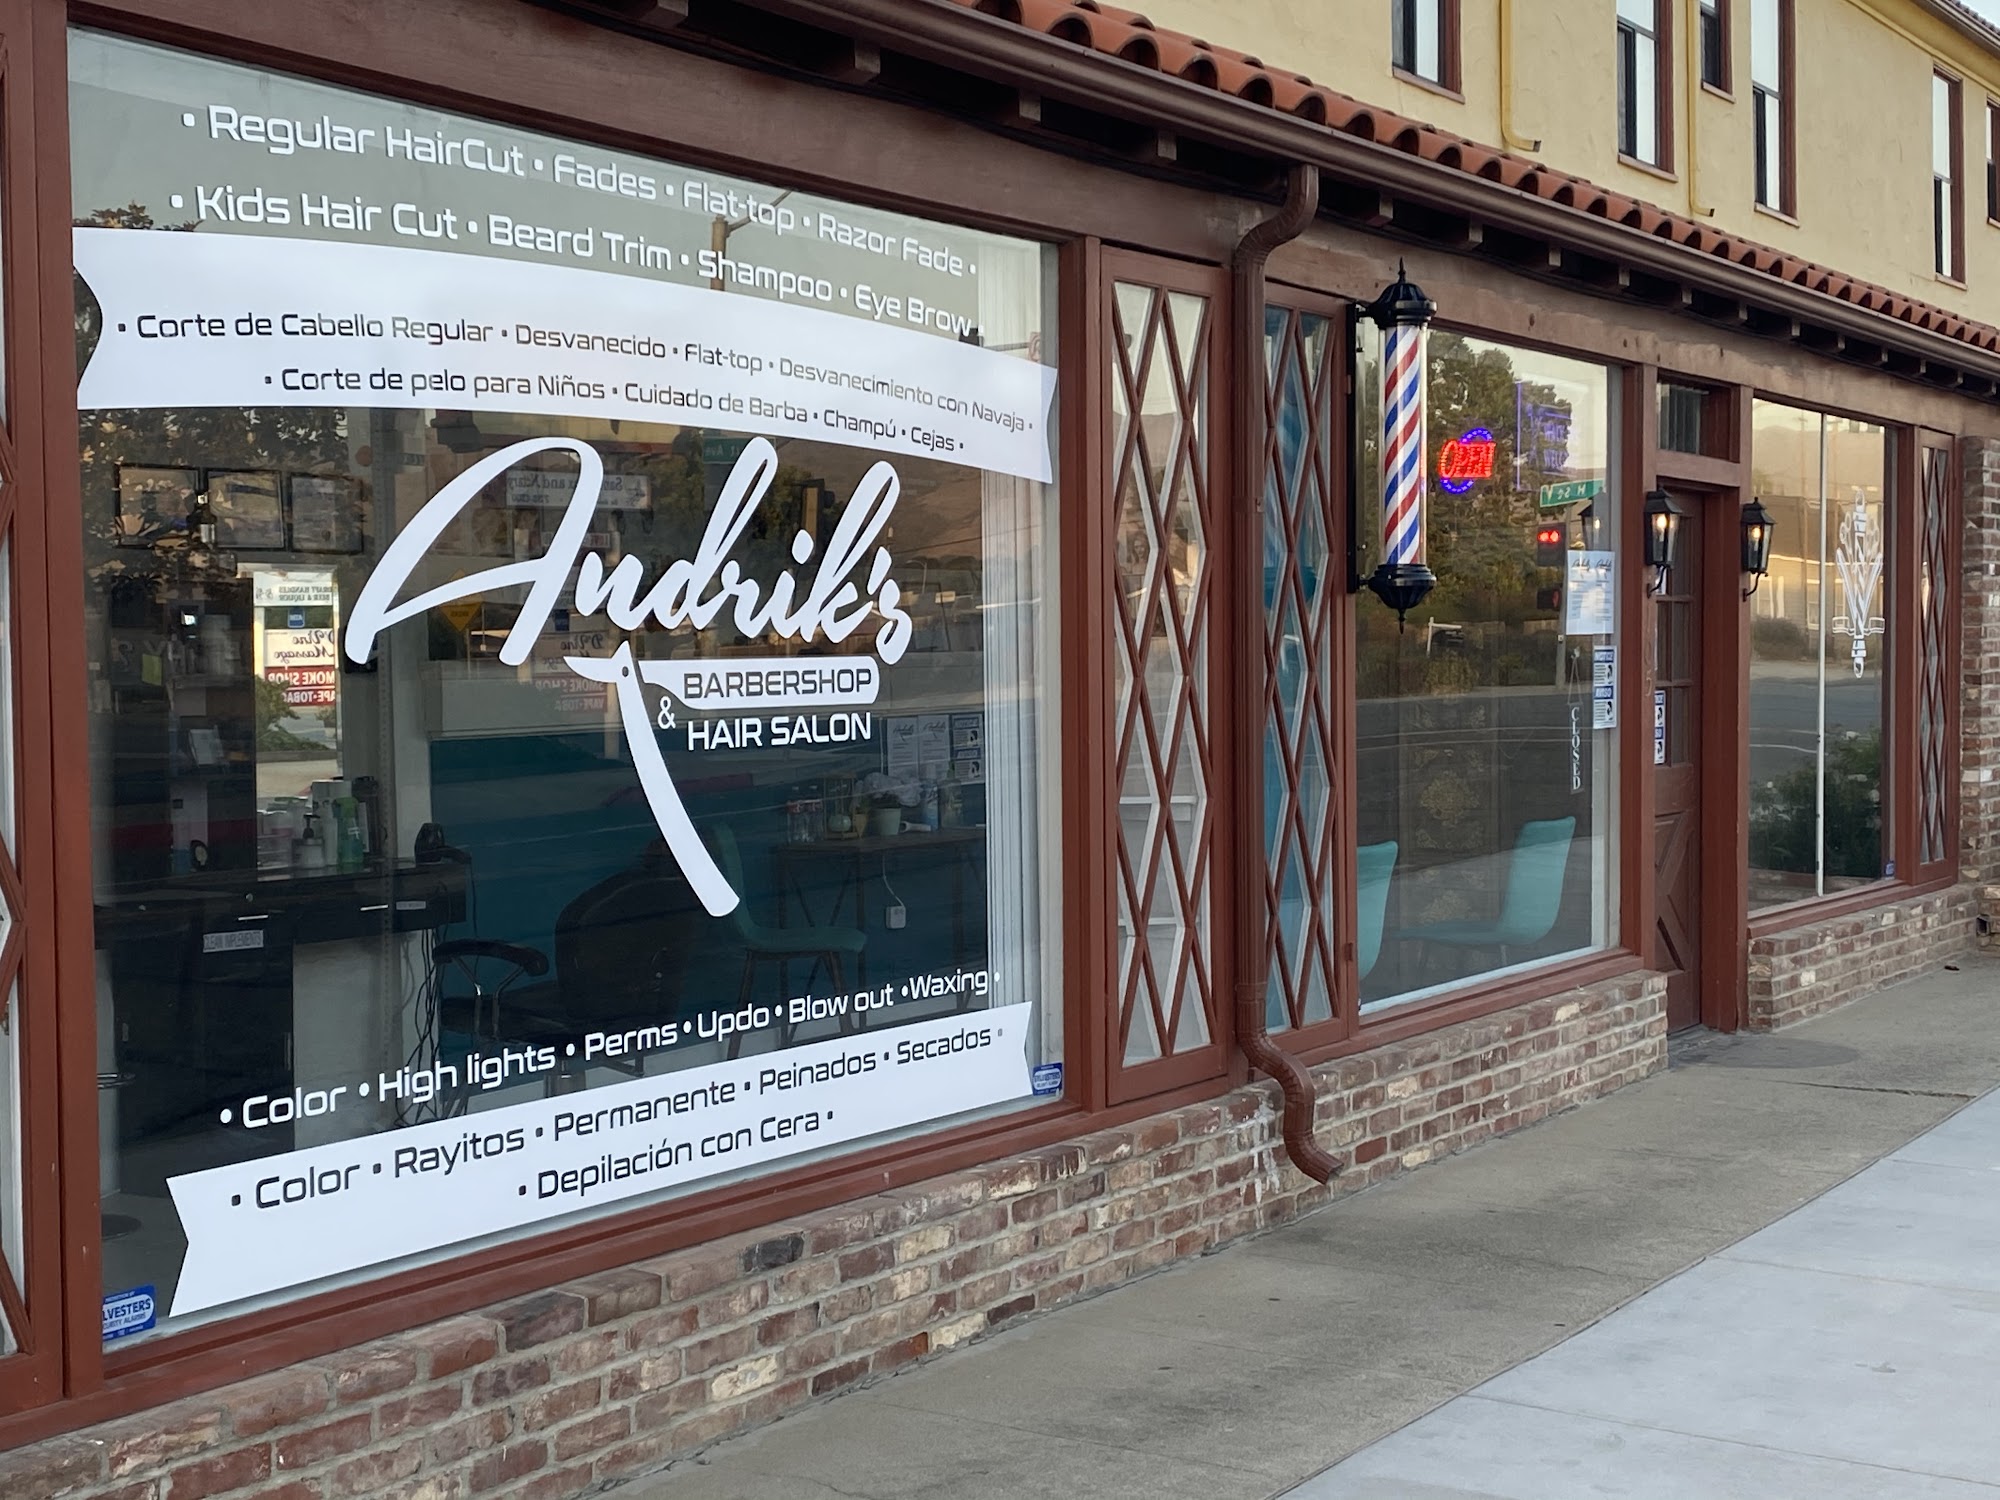 Andrik's Barbershop and Hair Salon